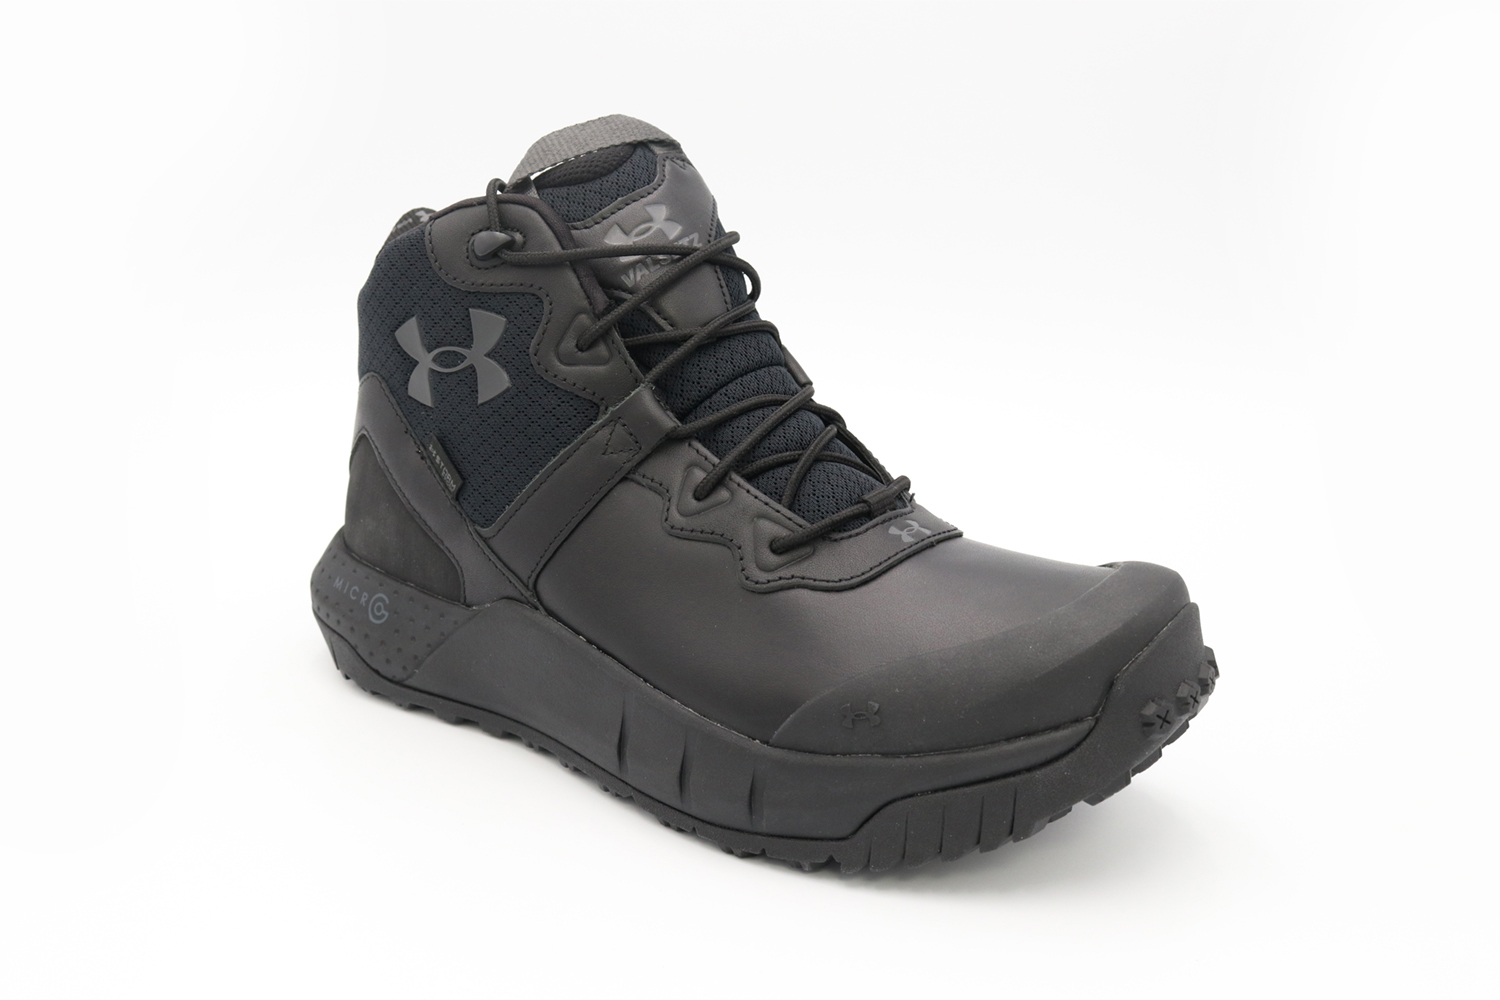 Under Armor Men's Micro G Valsetz Waterproof Boots Black